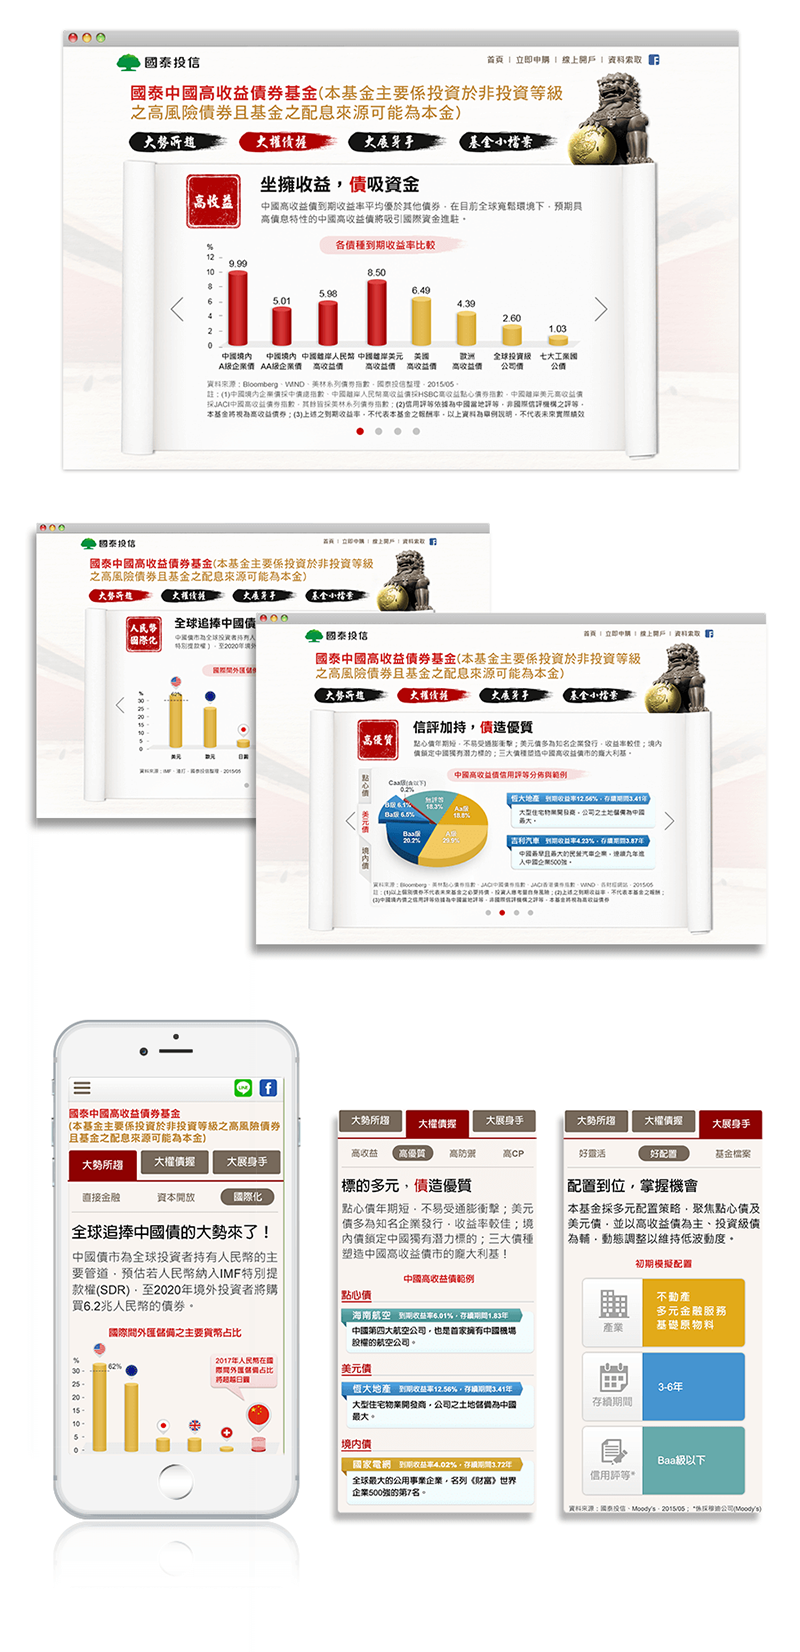 國泰投信 中國高收益債券基金 活動網站 平面設計